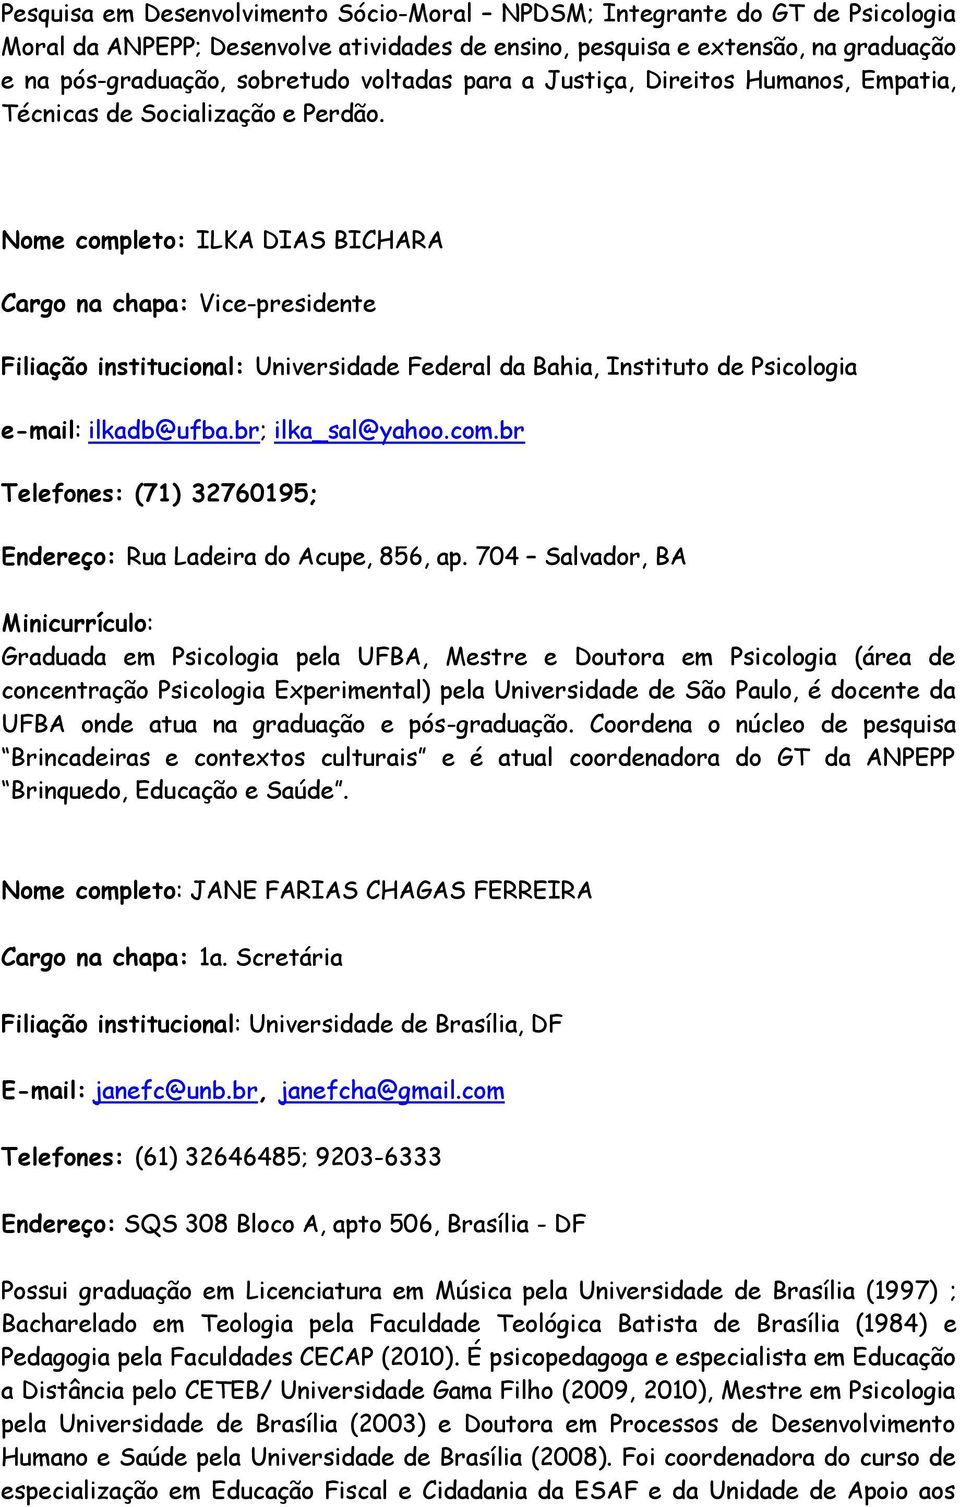 Nome completo: ILKA DIAS BICHARA Cargo na chapa: Vice-presidente Filiação institucional: Universidade Federal da Bahia, Instituto de Psicologia e-mail: ilkadb@ufba.br; ilka_sal@yahoo.com.br Telefones: (71) 32760195; Endereço: Rua Ladeira do Acupe, 856, ap.